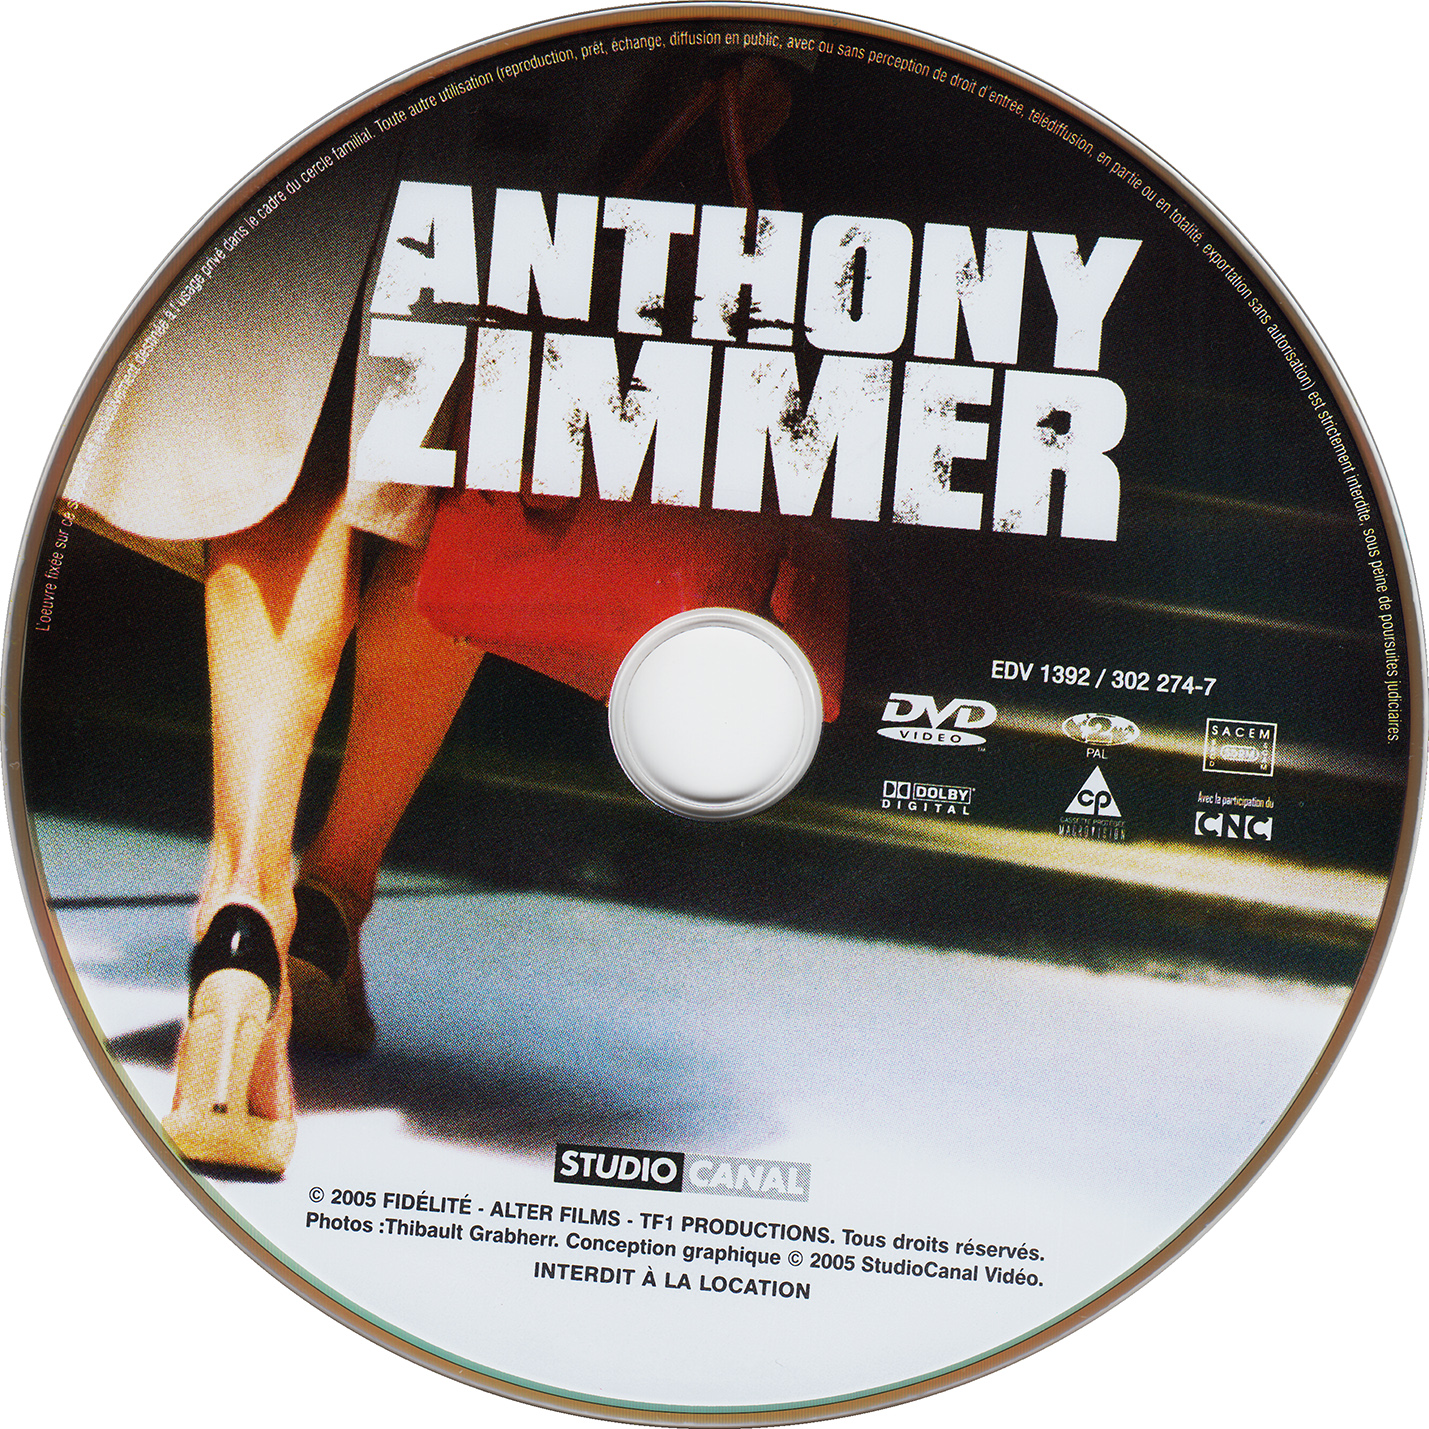 Anthony Zimmer v2